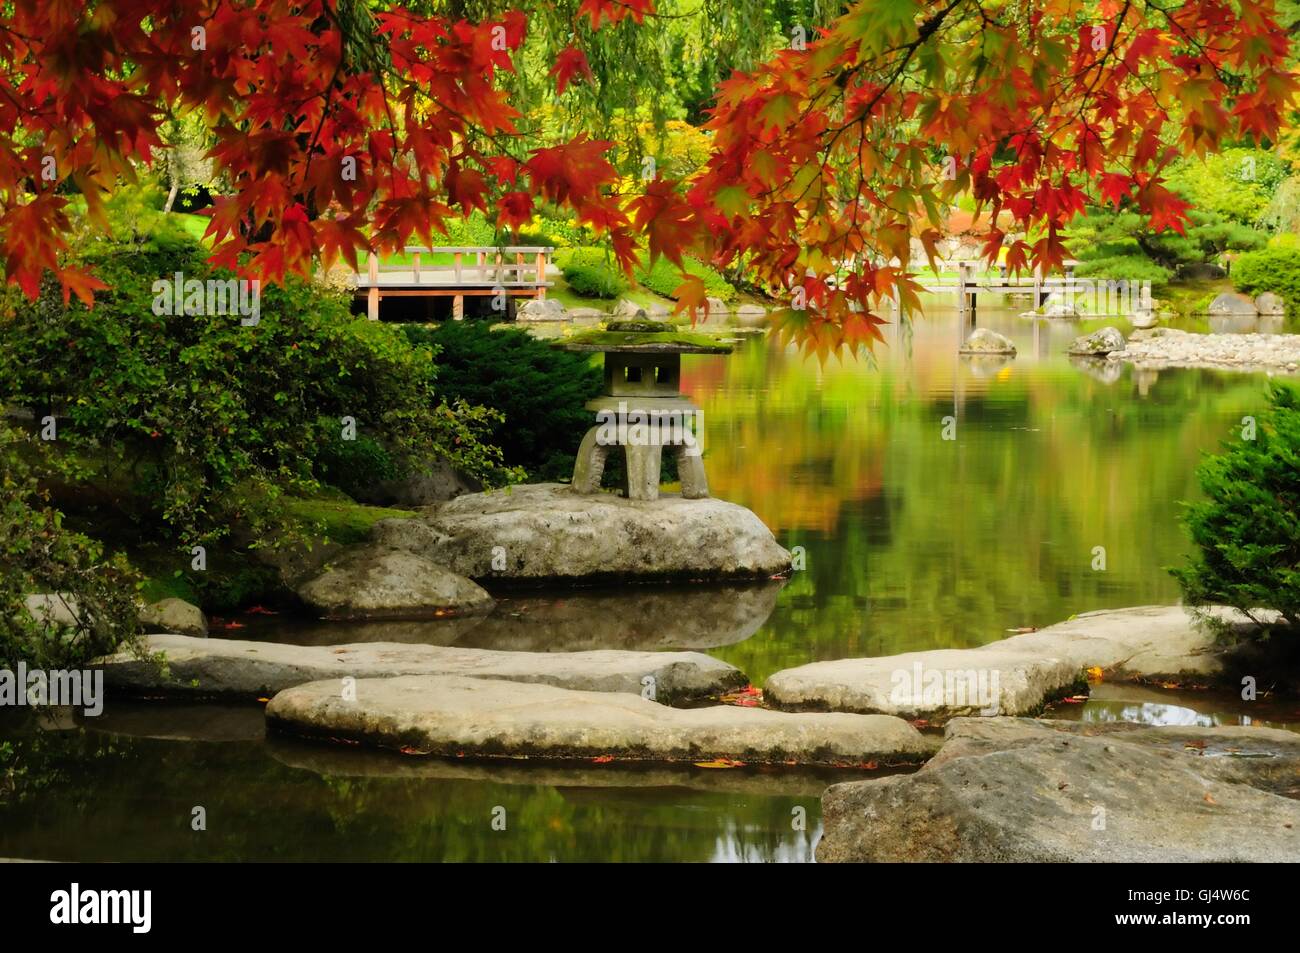 Beautiful Japanese Garden in autumn Stock Photo